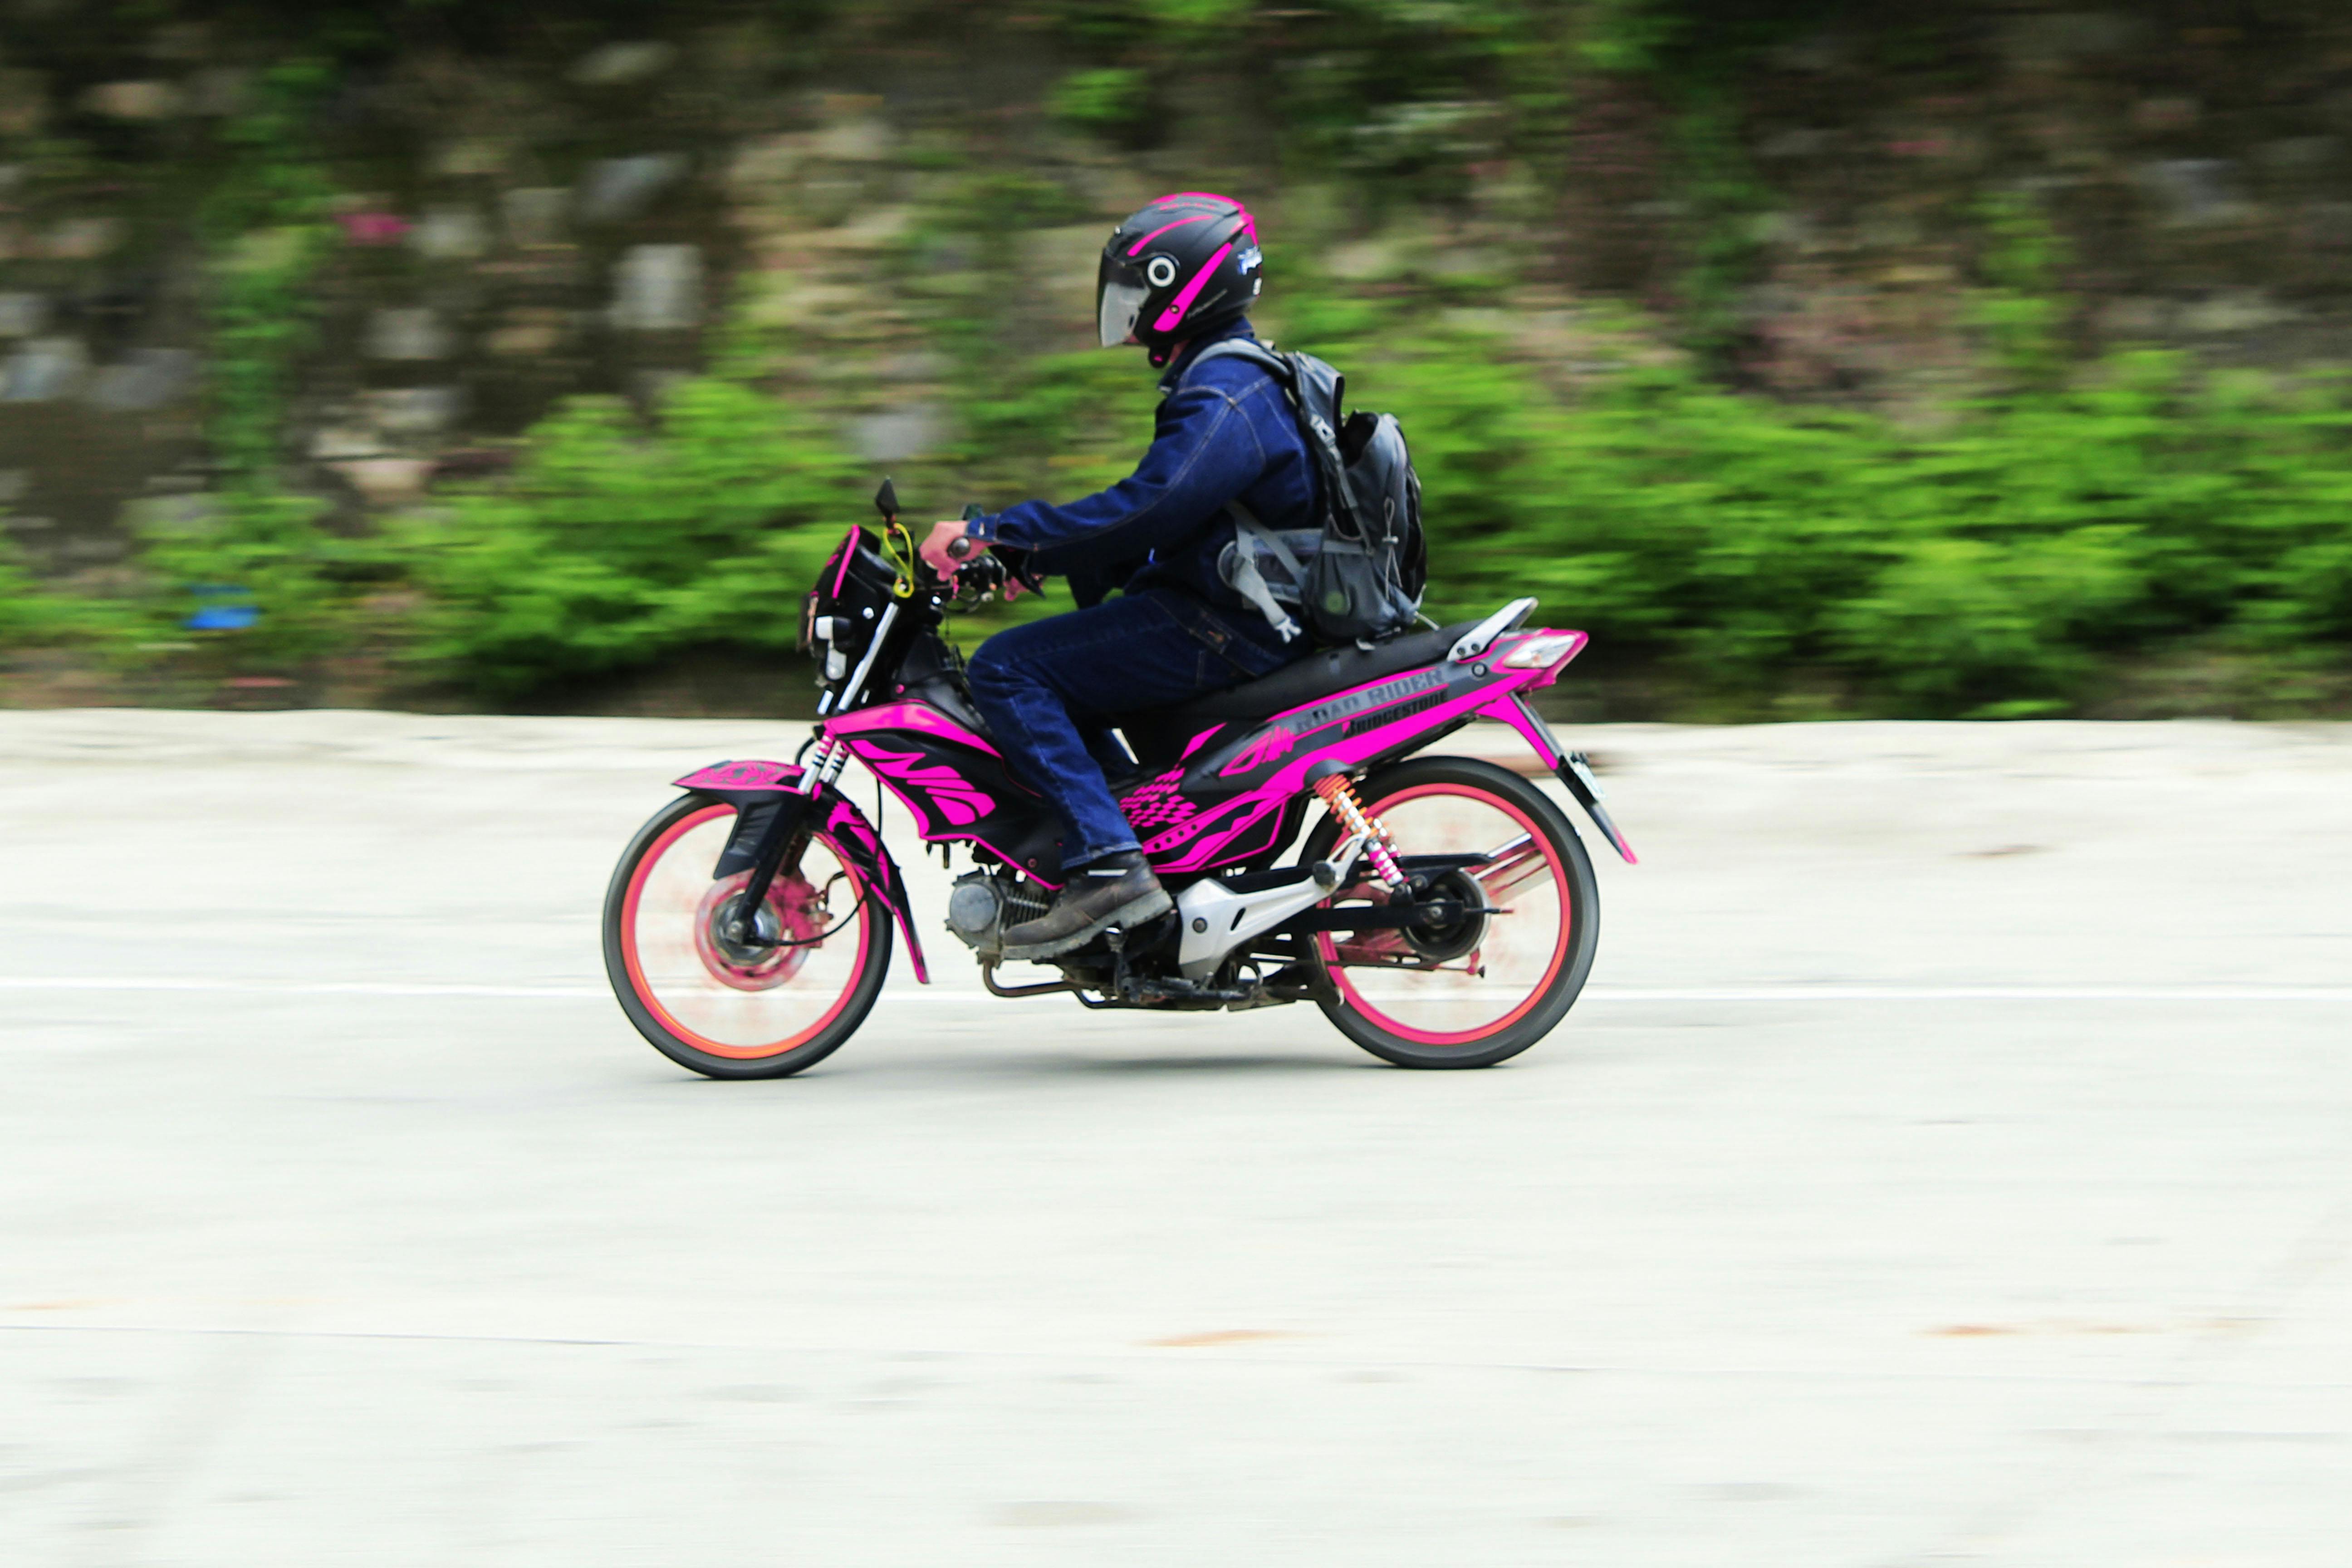 2 wheels in motion motorcycle rental